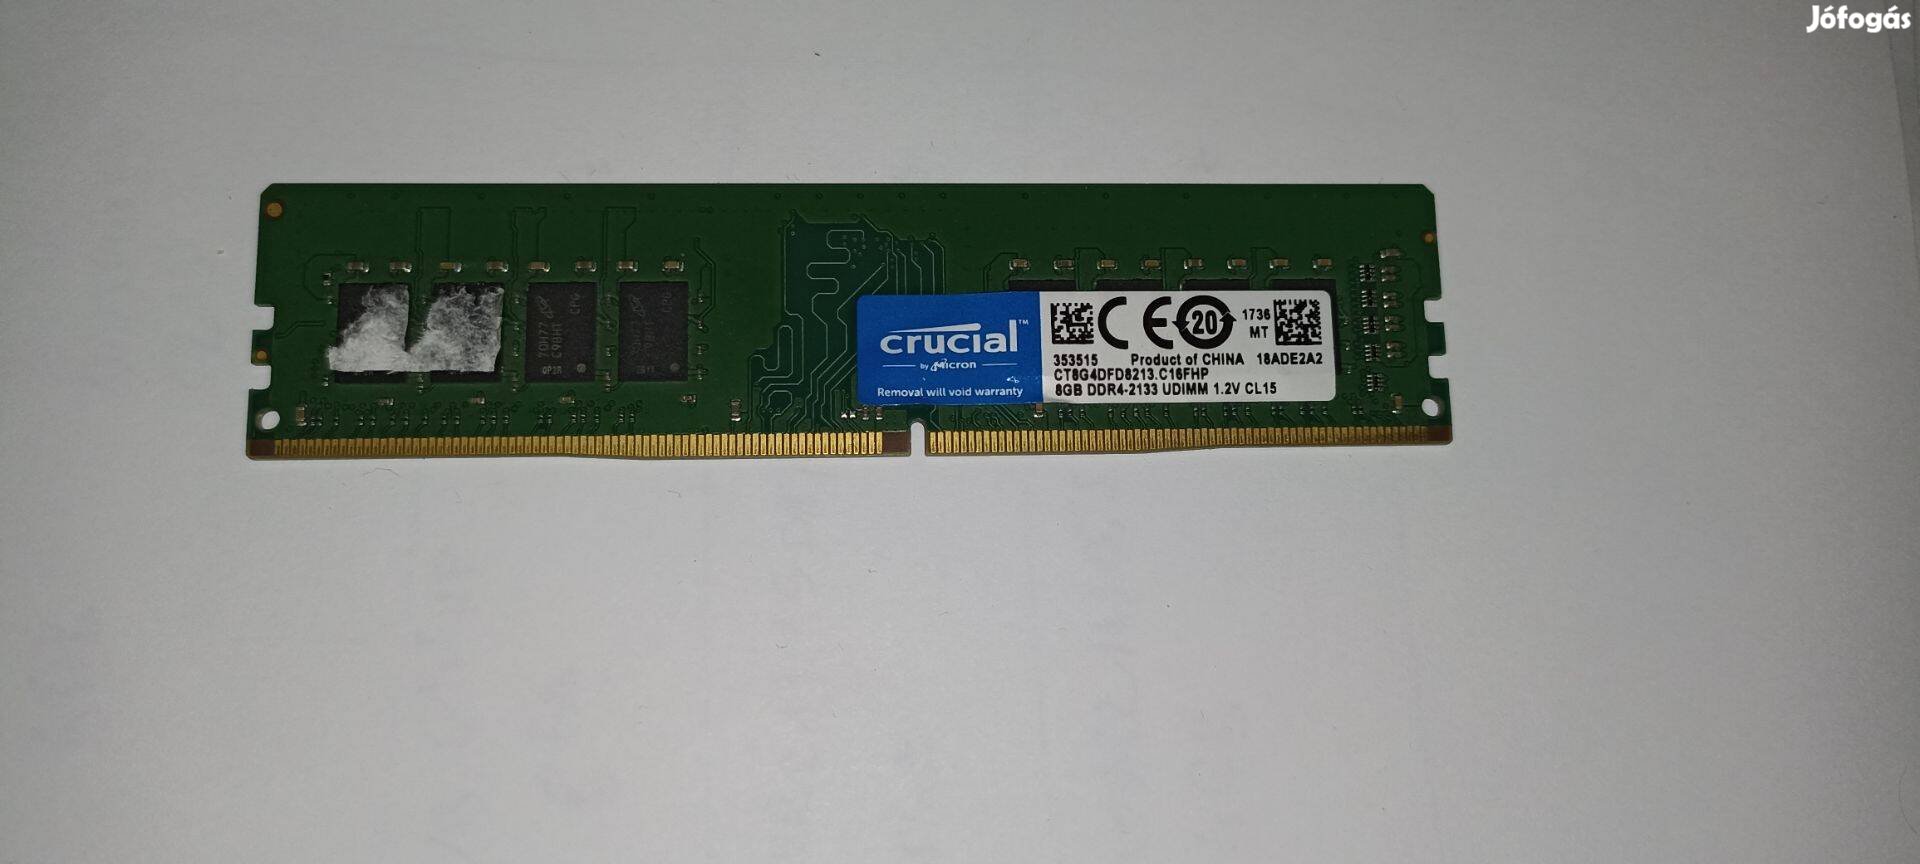 Crucial DDR4 8GB memória